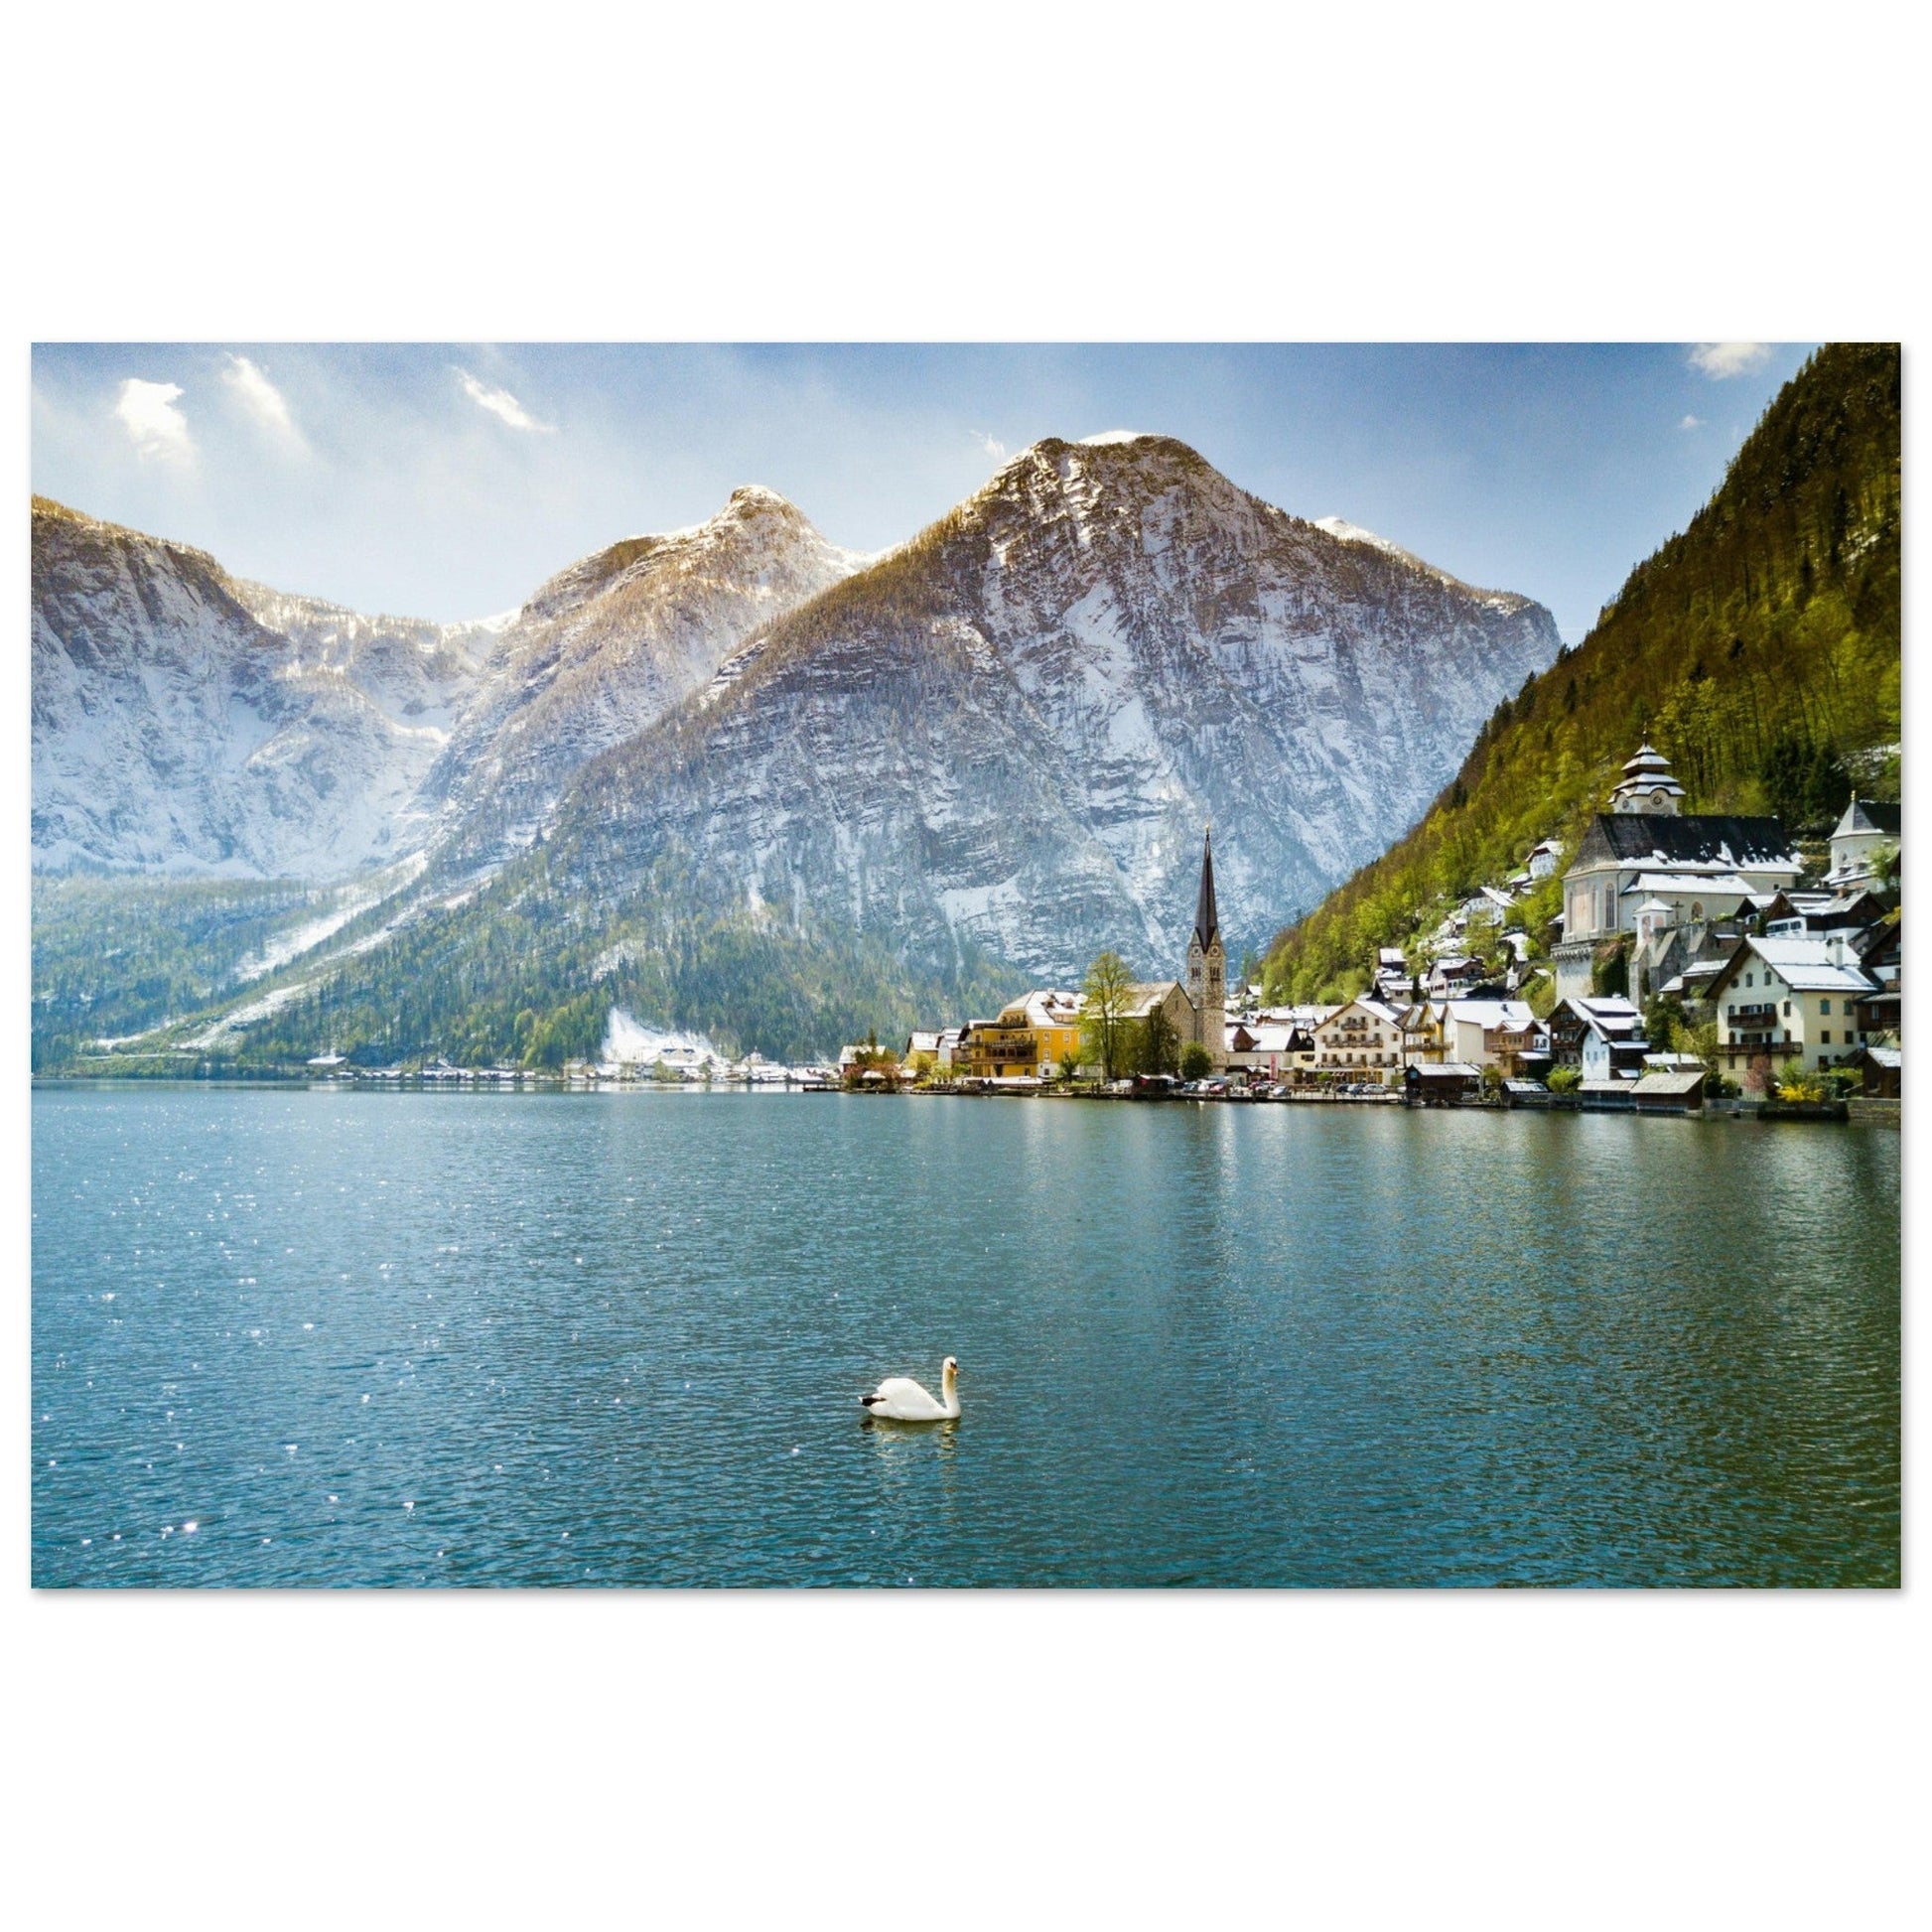 Vente Photo de Hallstatt, Autriche #4 - Tableau photo paysage